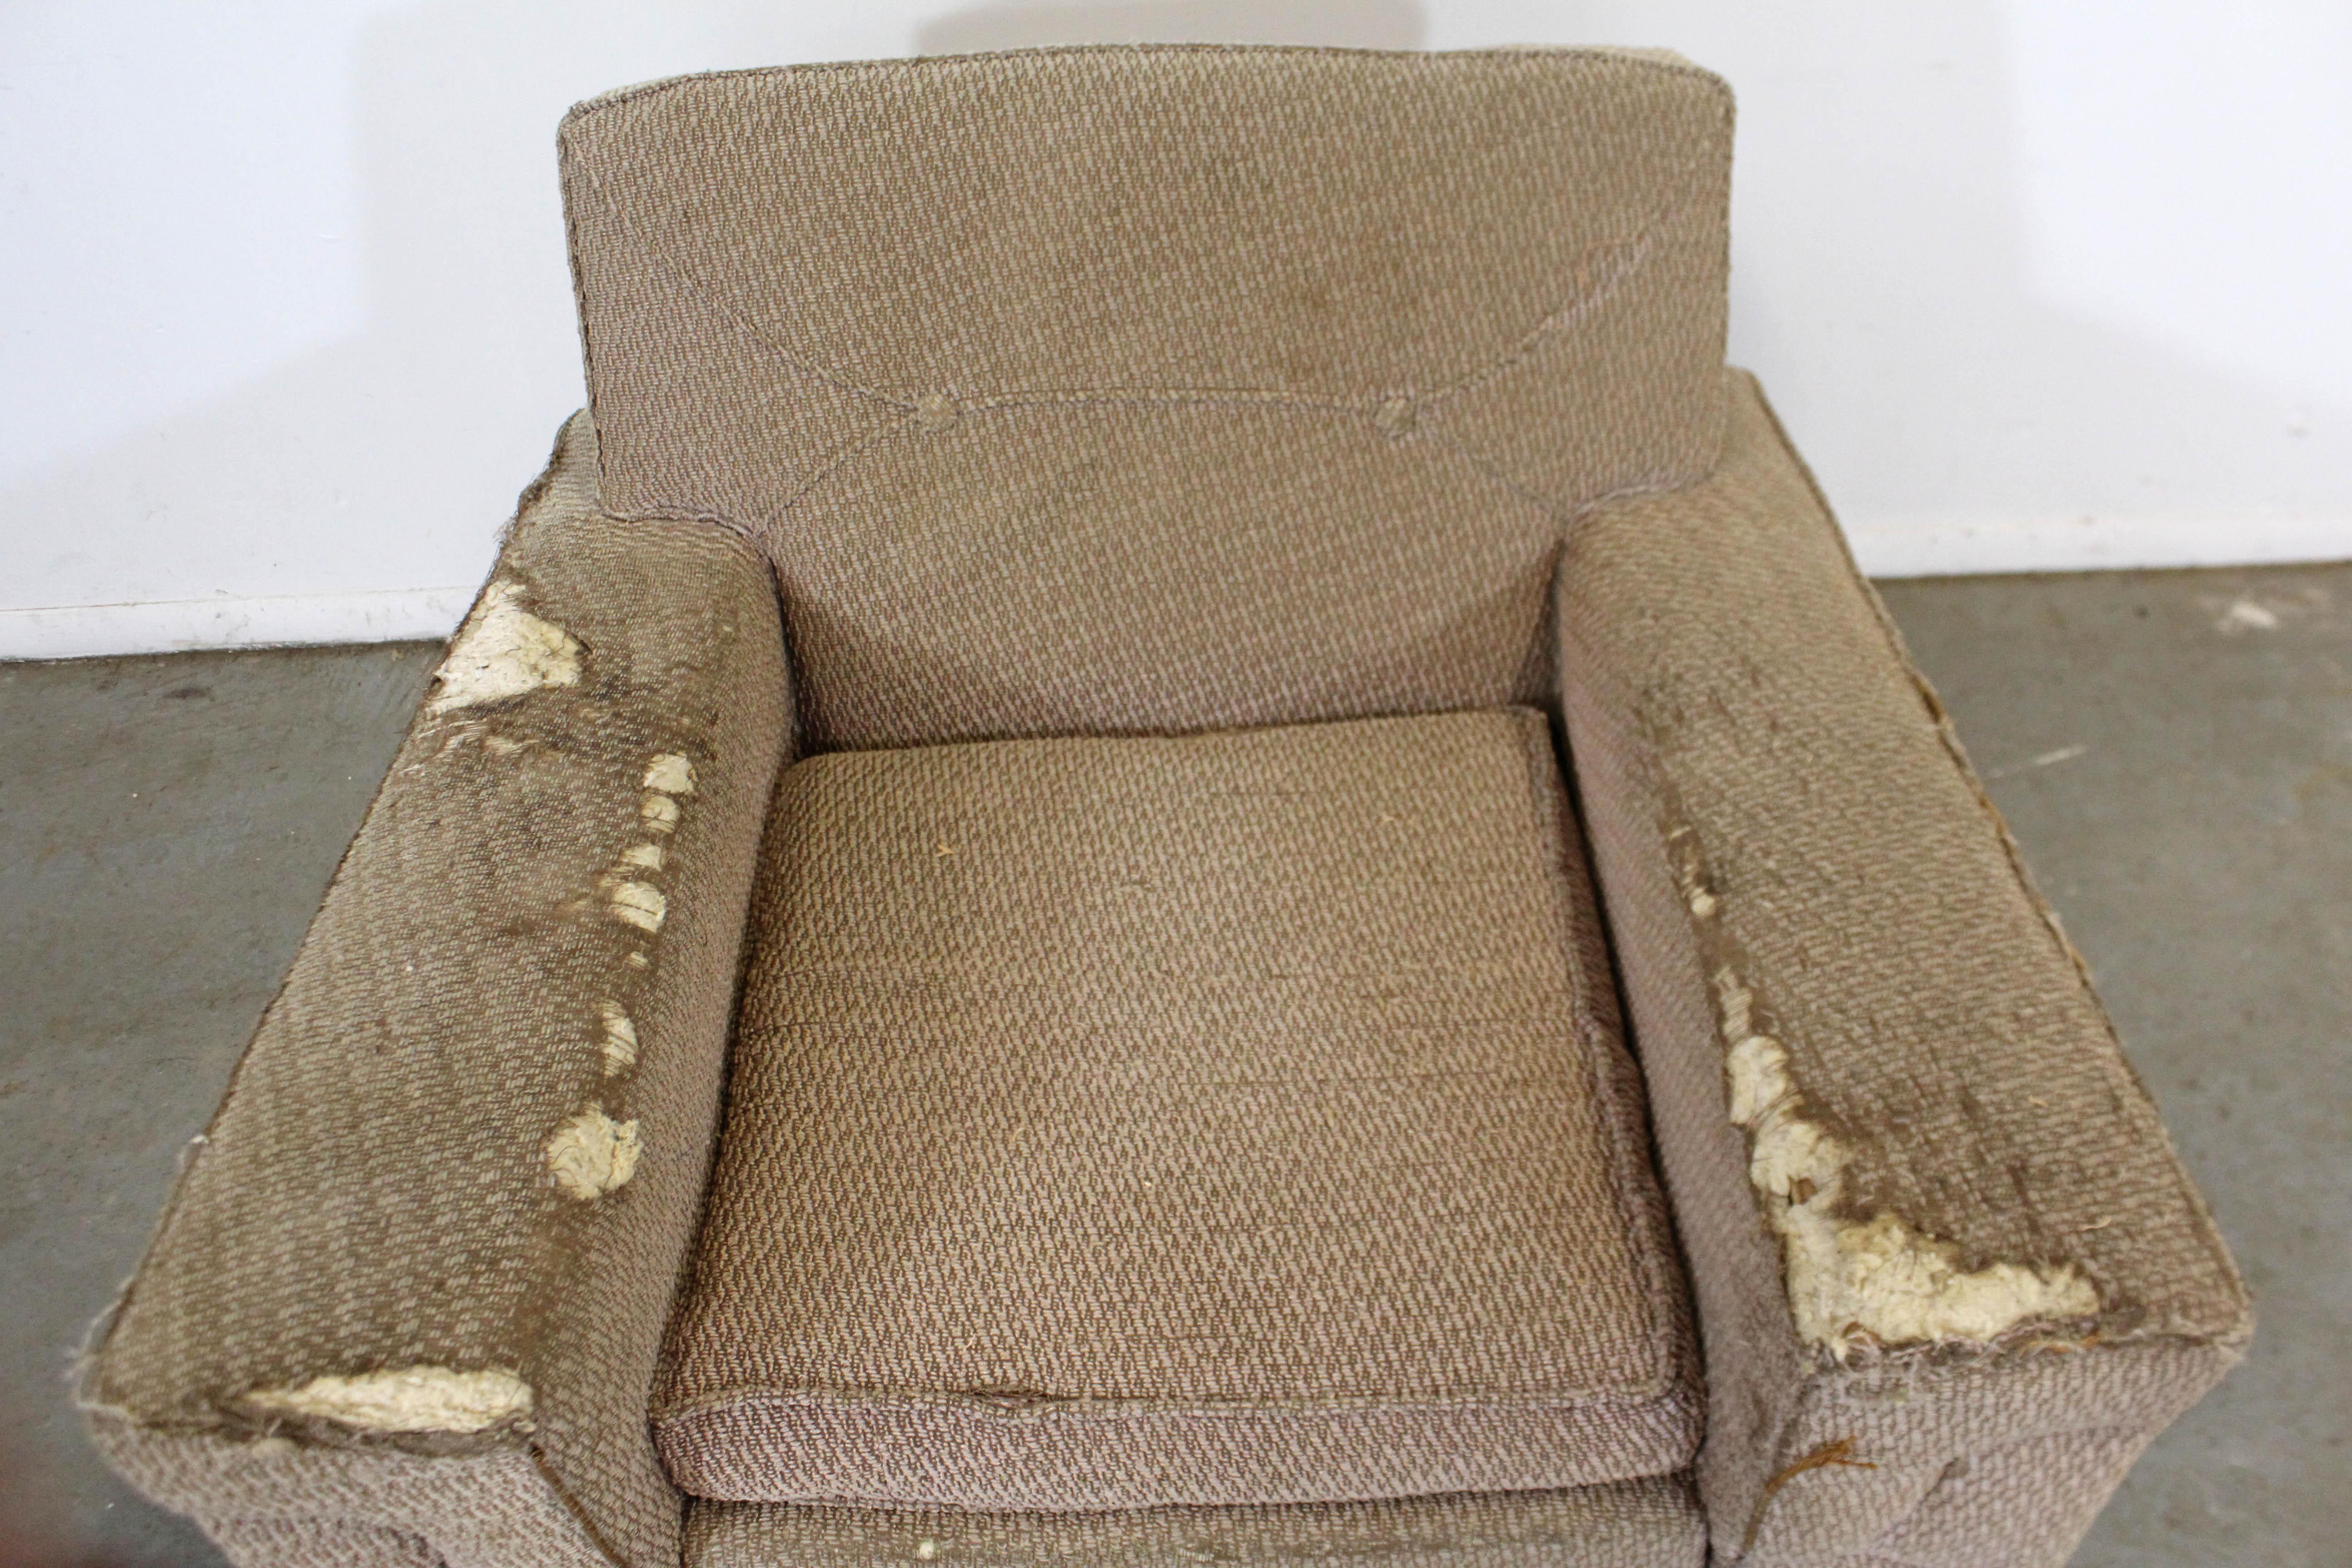 vintage kroehler chair